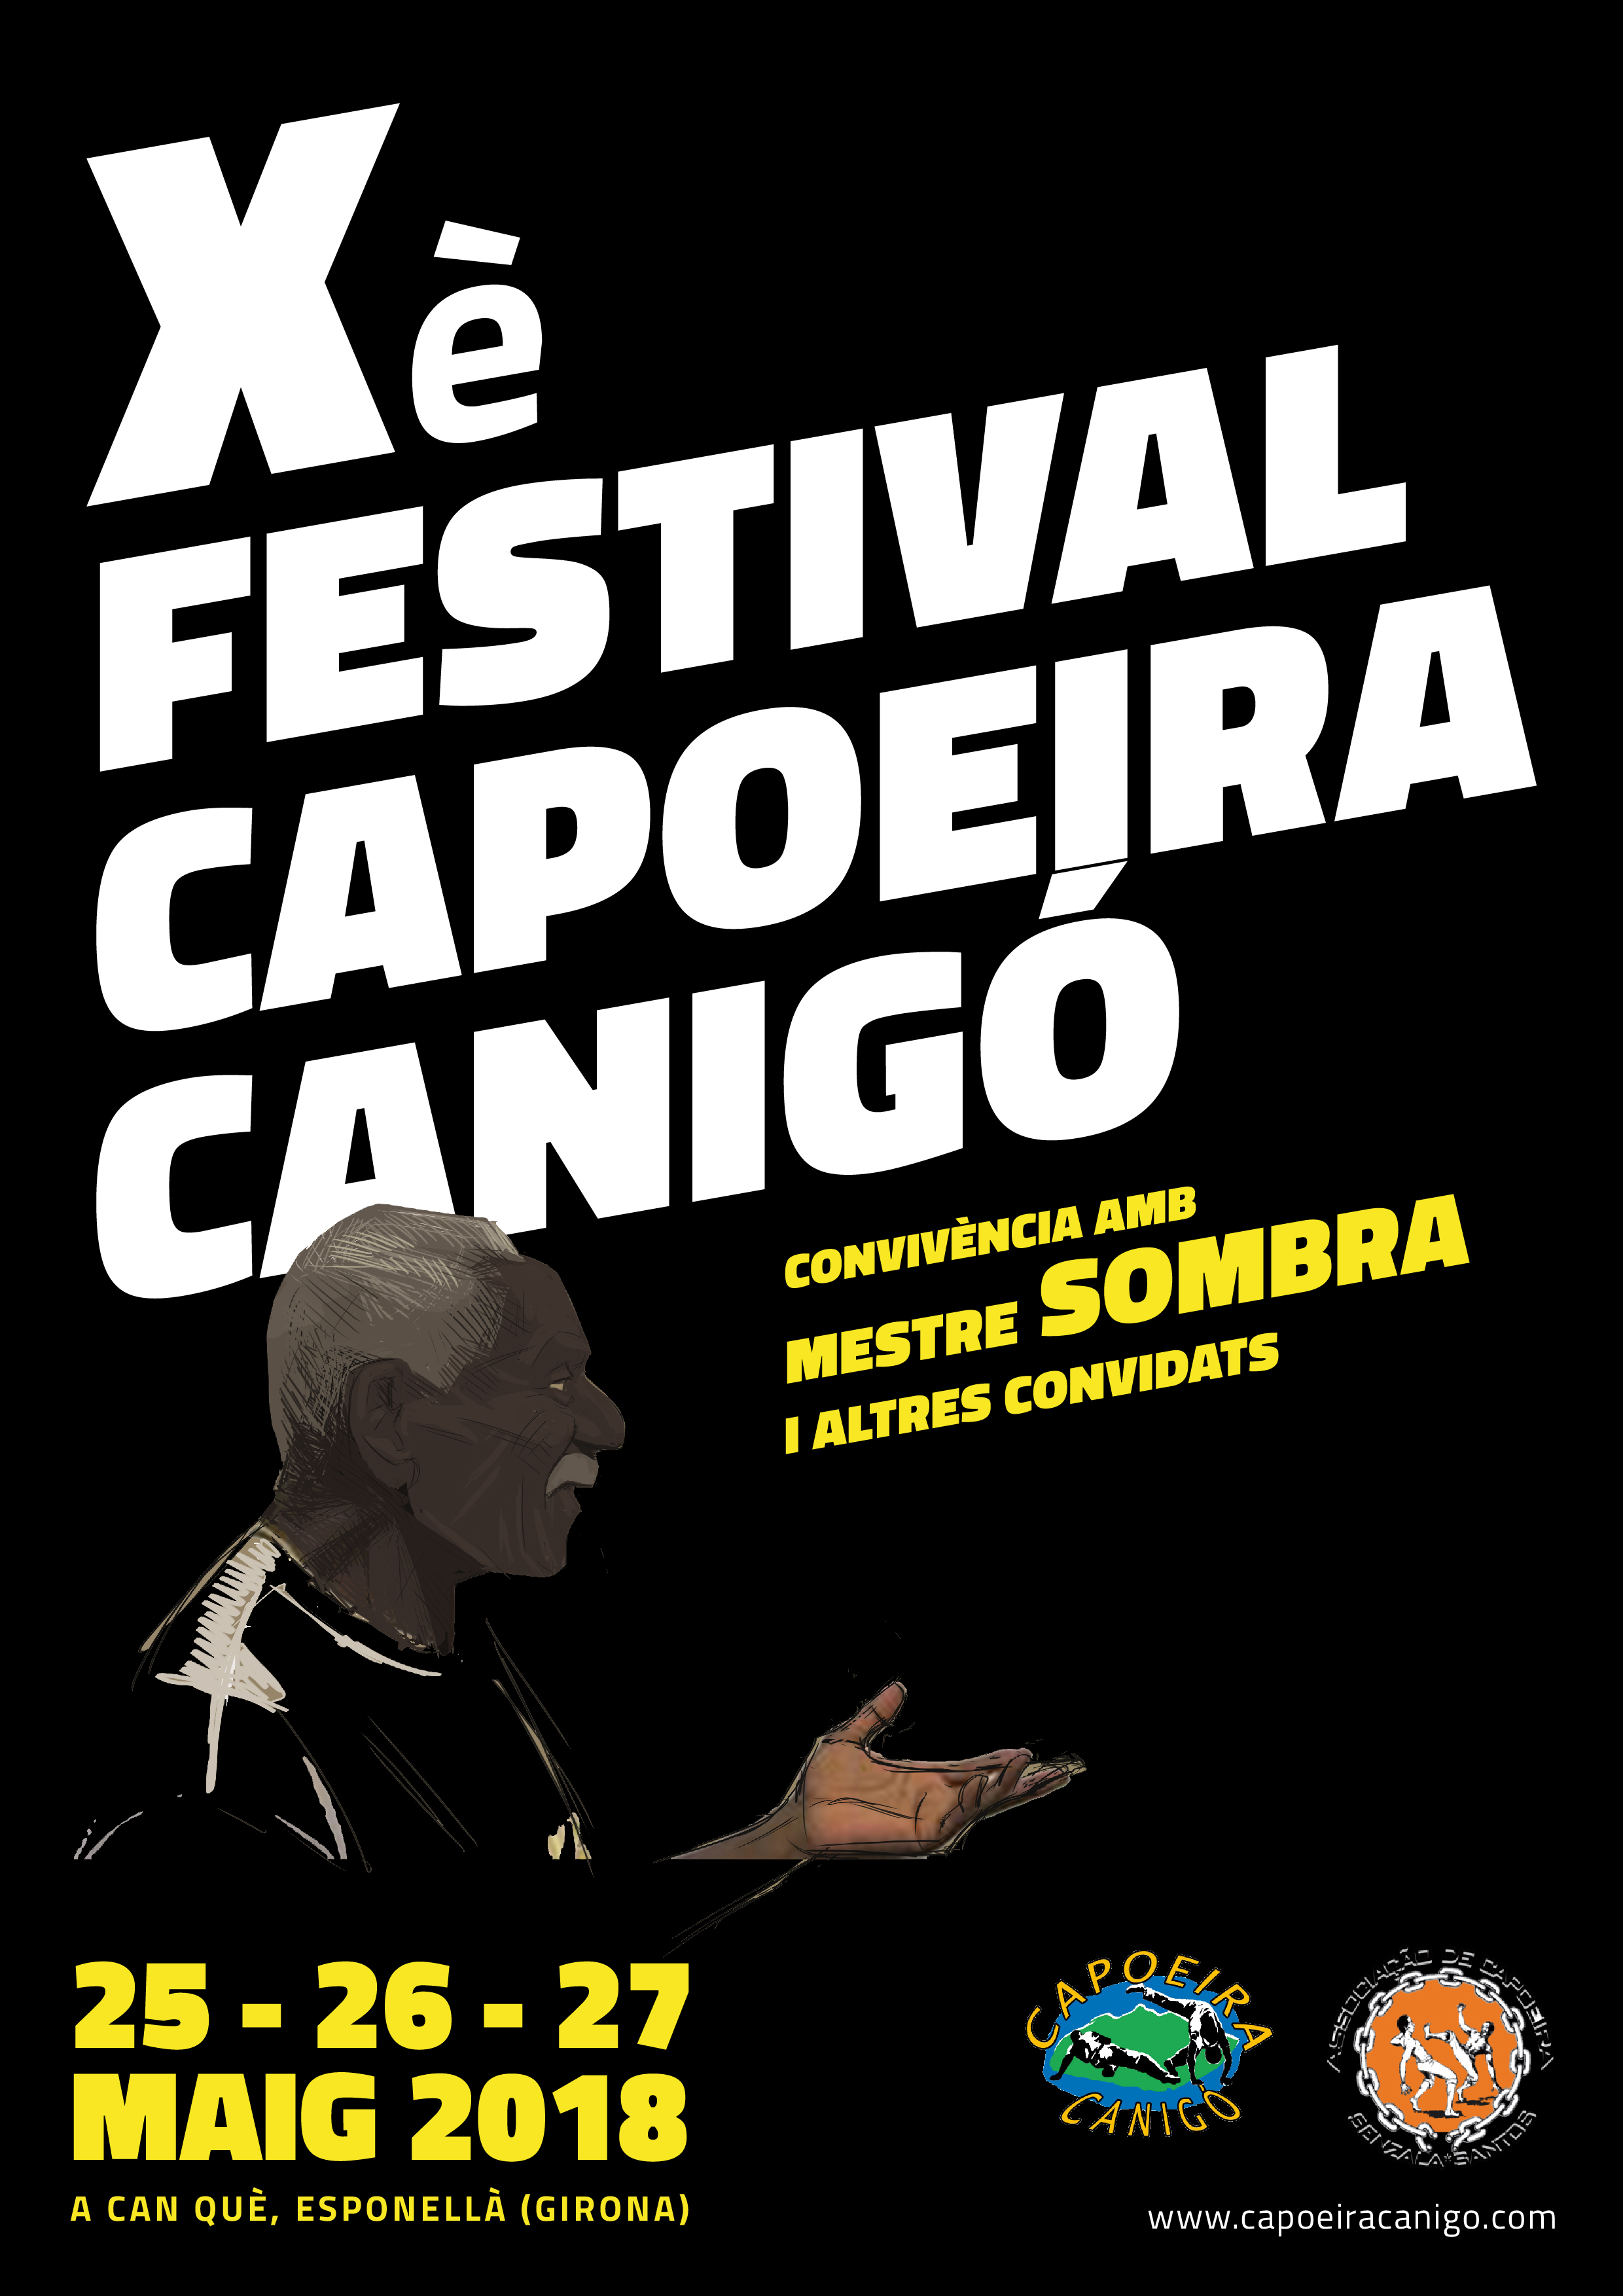 cartell-festival-capoeira-canigo-mestre-sombra